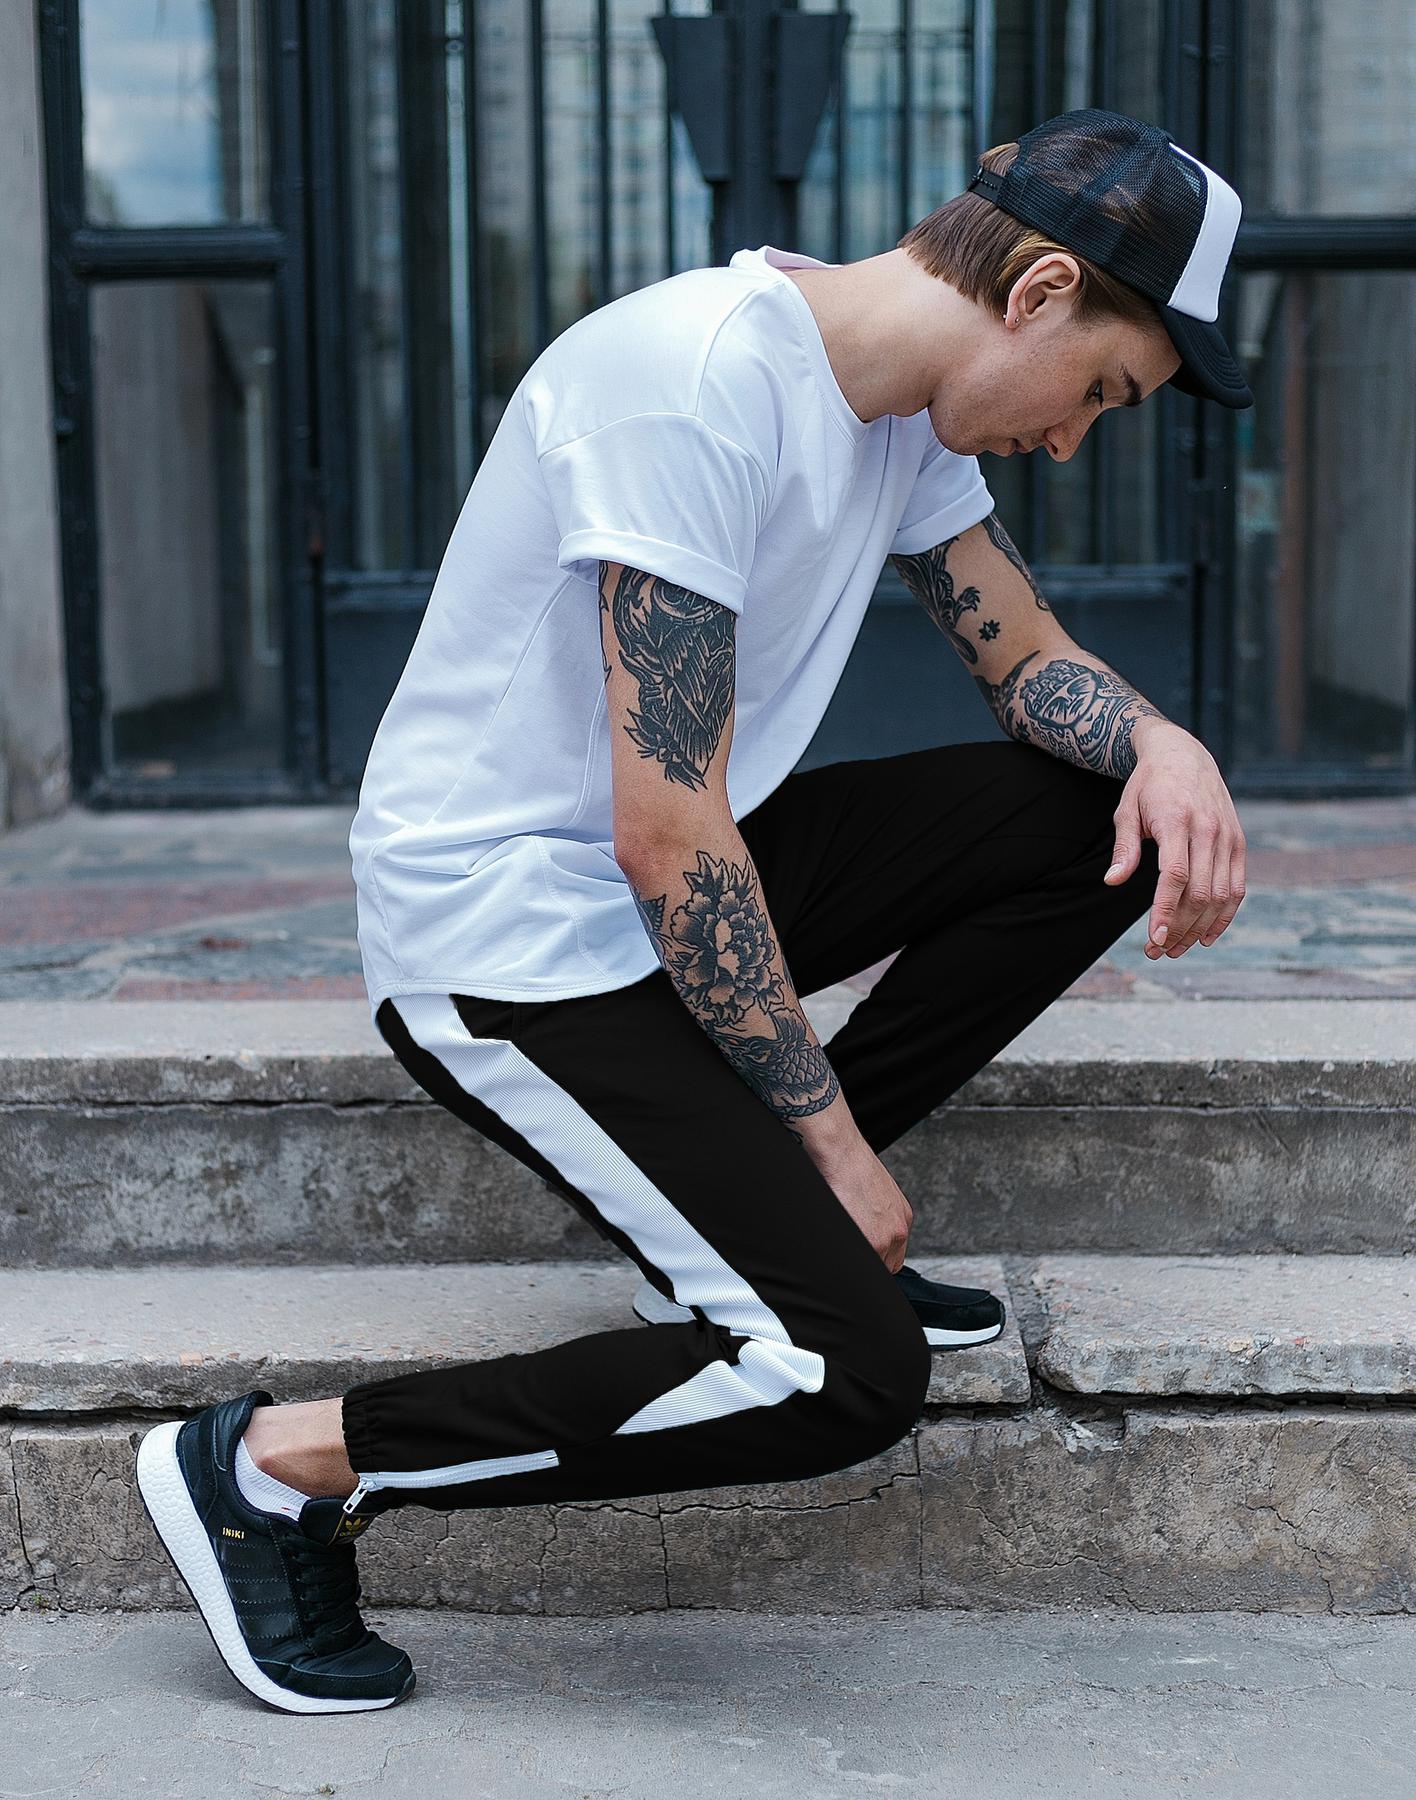 Спортивные штаны черные с белым лампасом мужские бренд ТУР модель Рокки (Rocky) TURWEAR - Фото 2